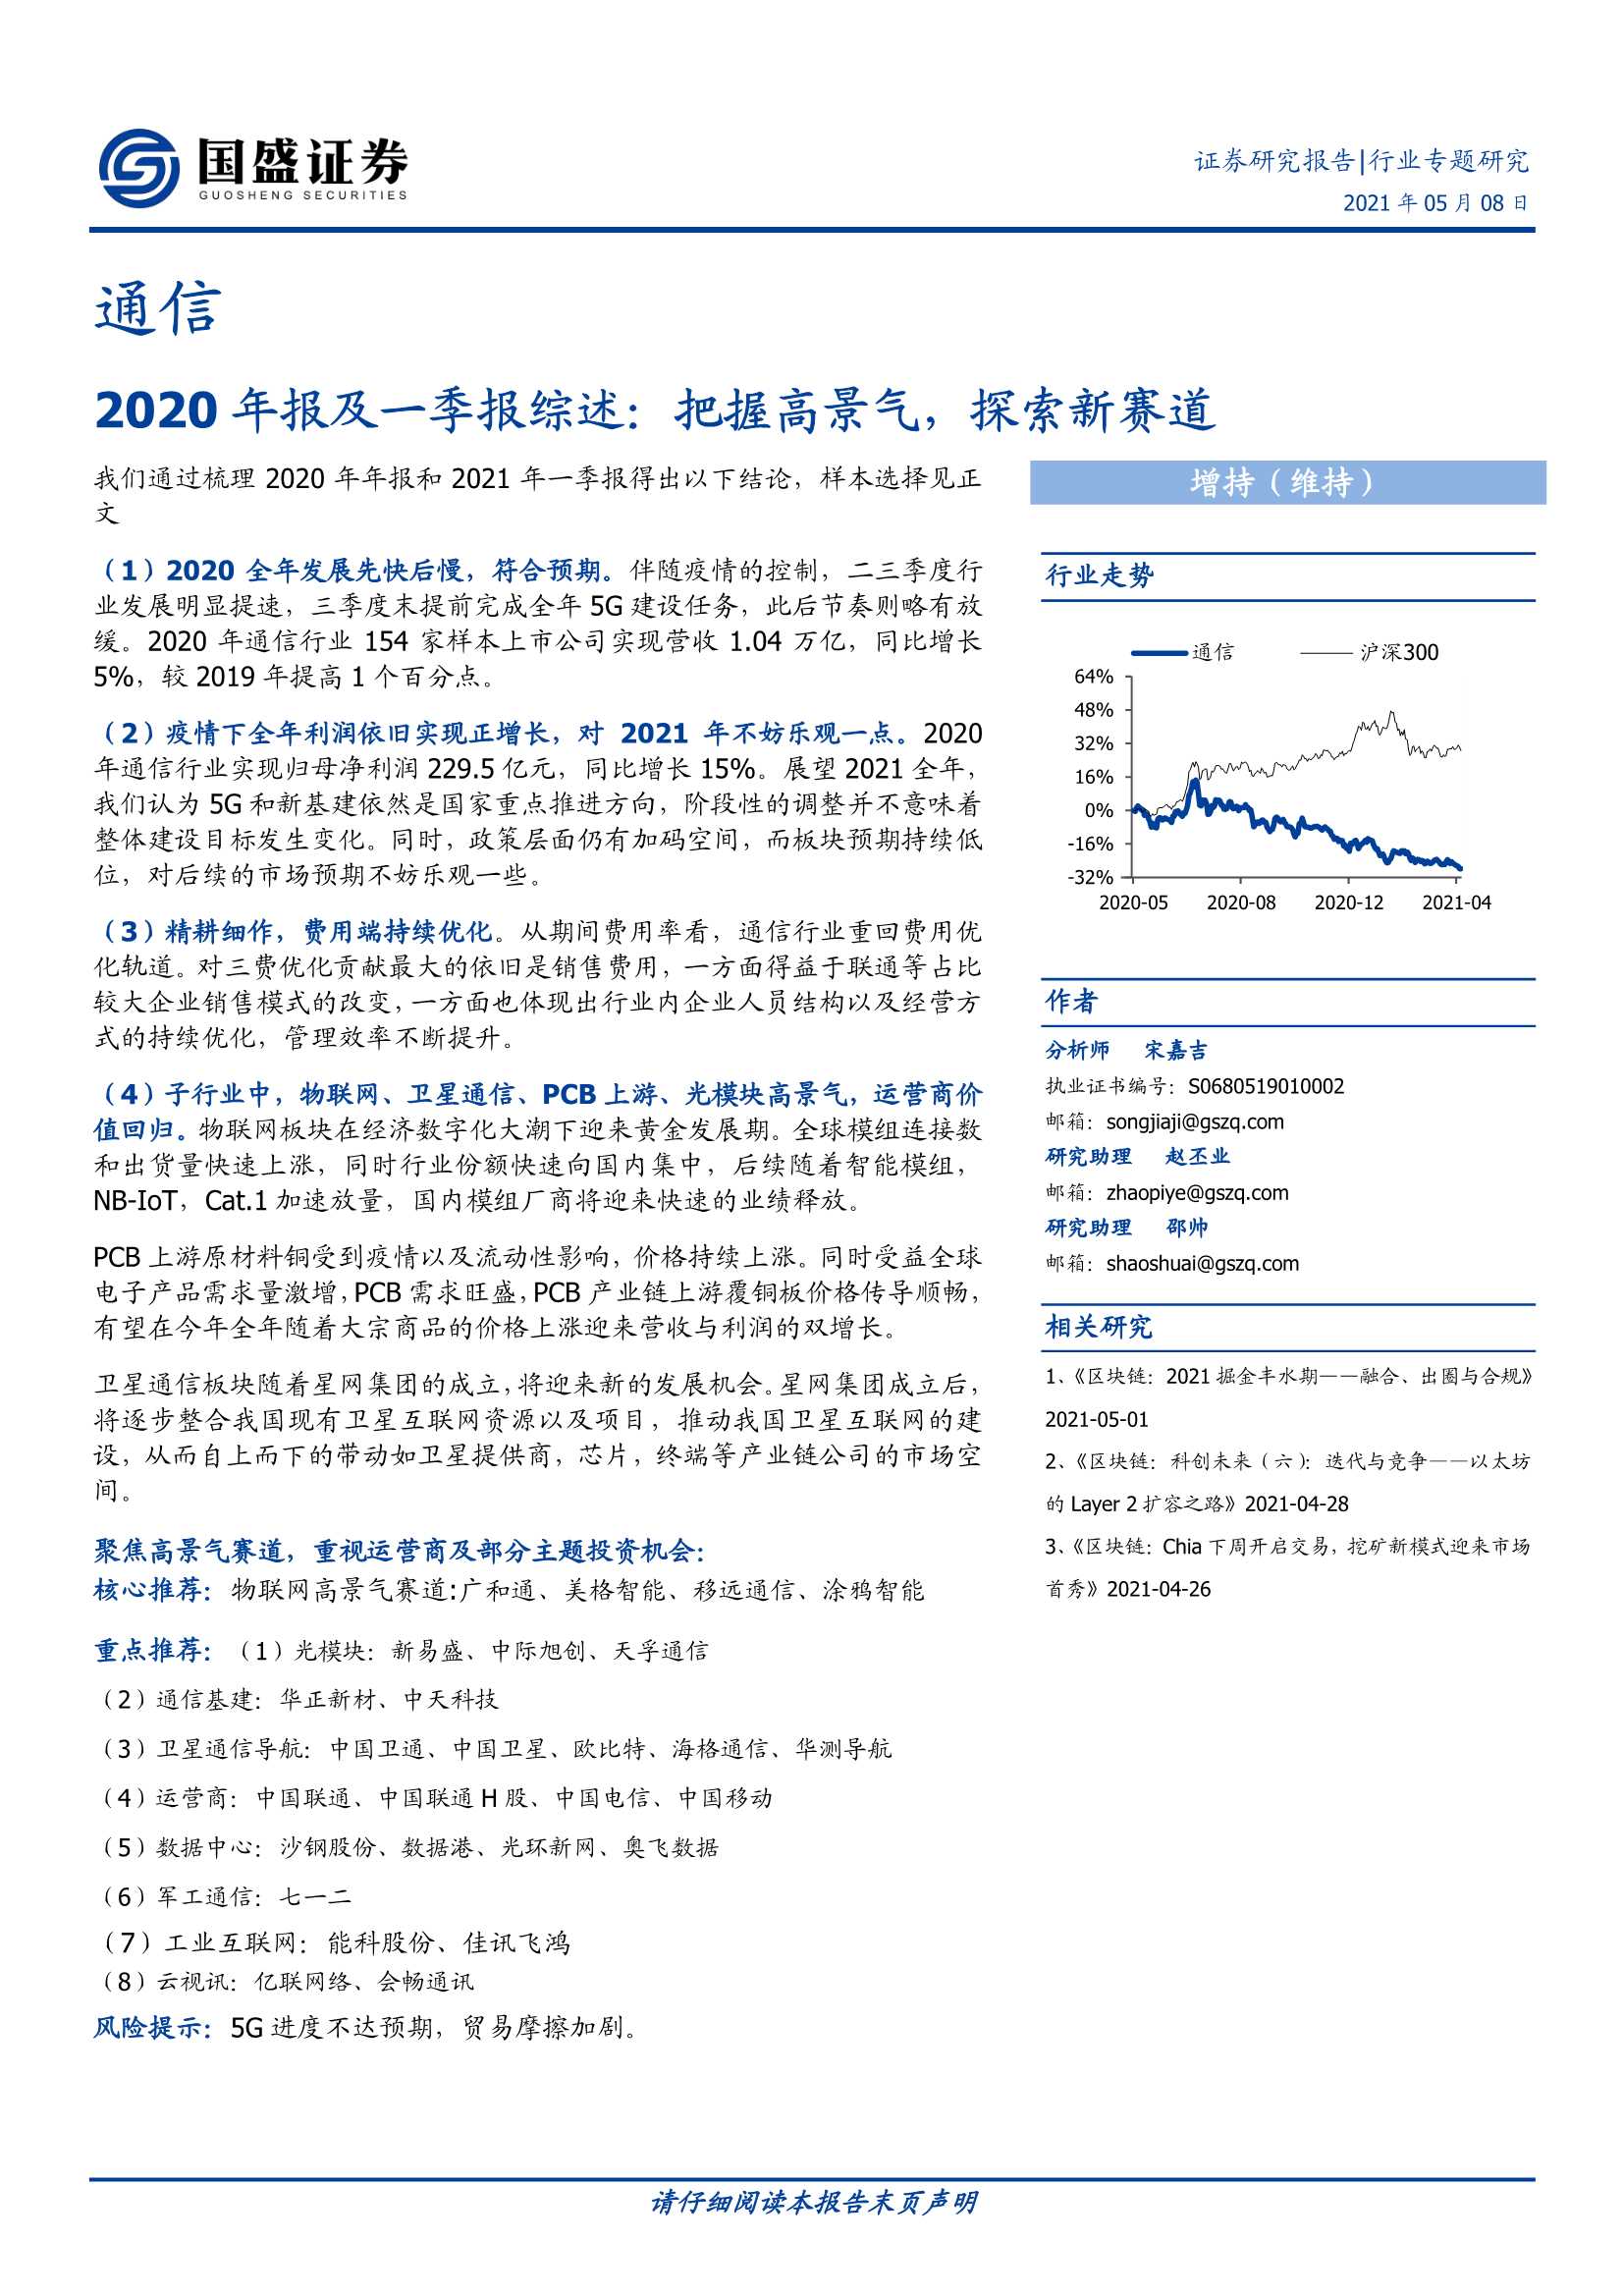 国盛证券-通信行业2020年报及一季报综述：把握高景气，探索新赛道-20210508-24页